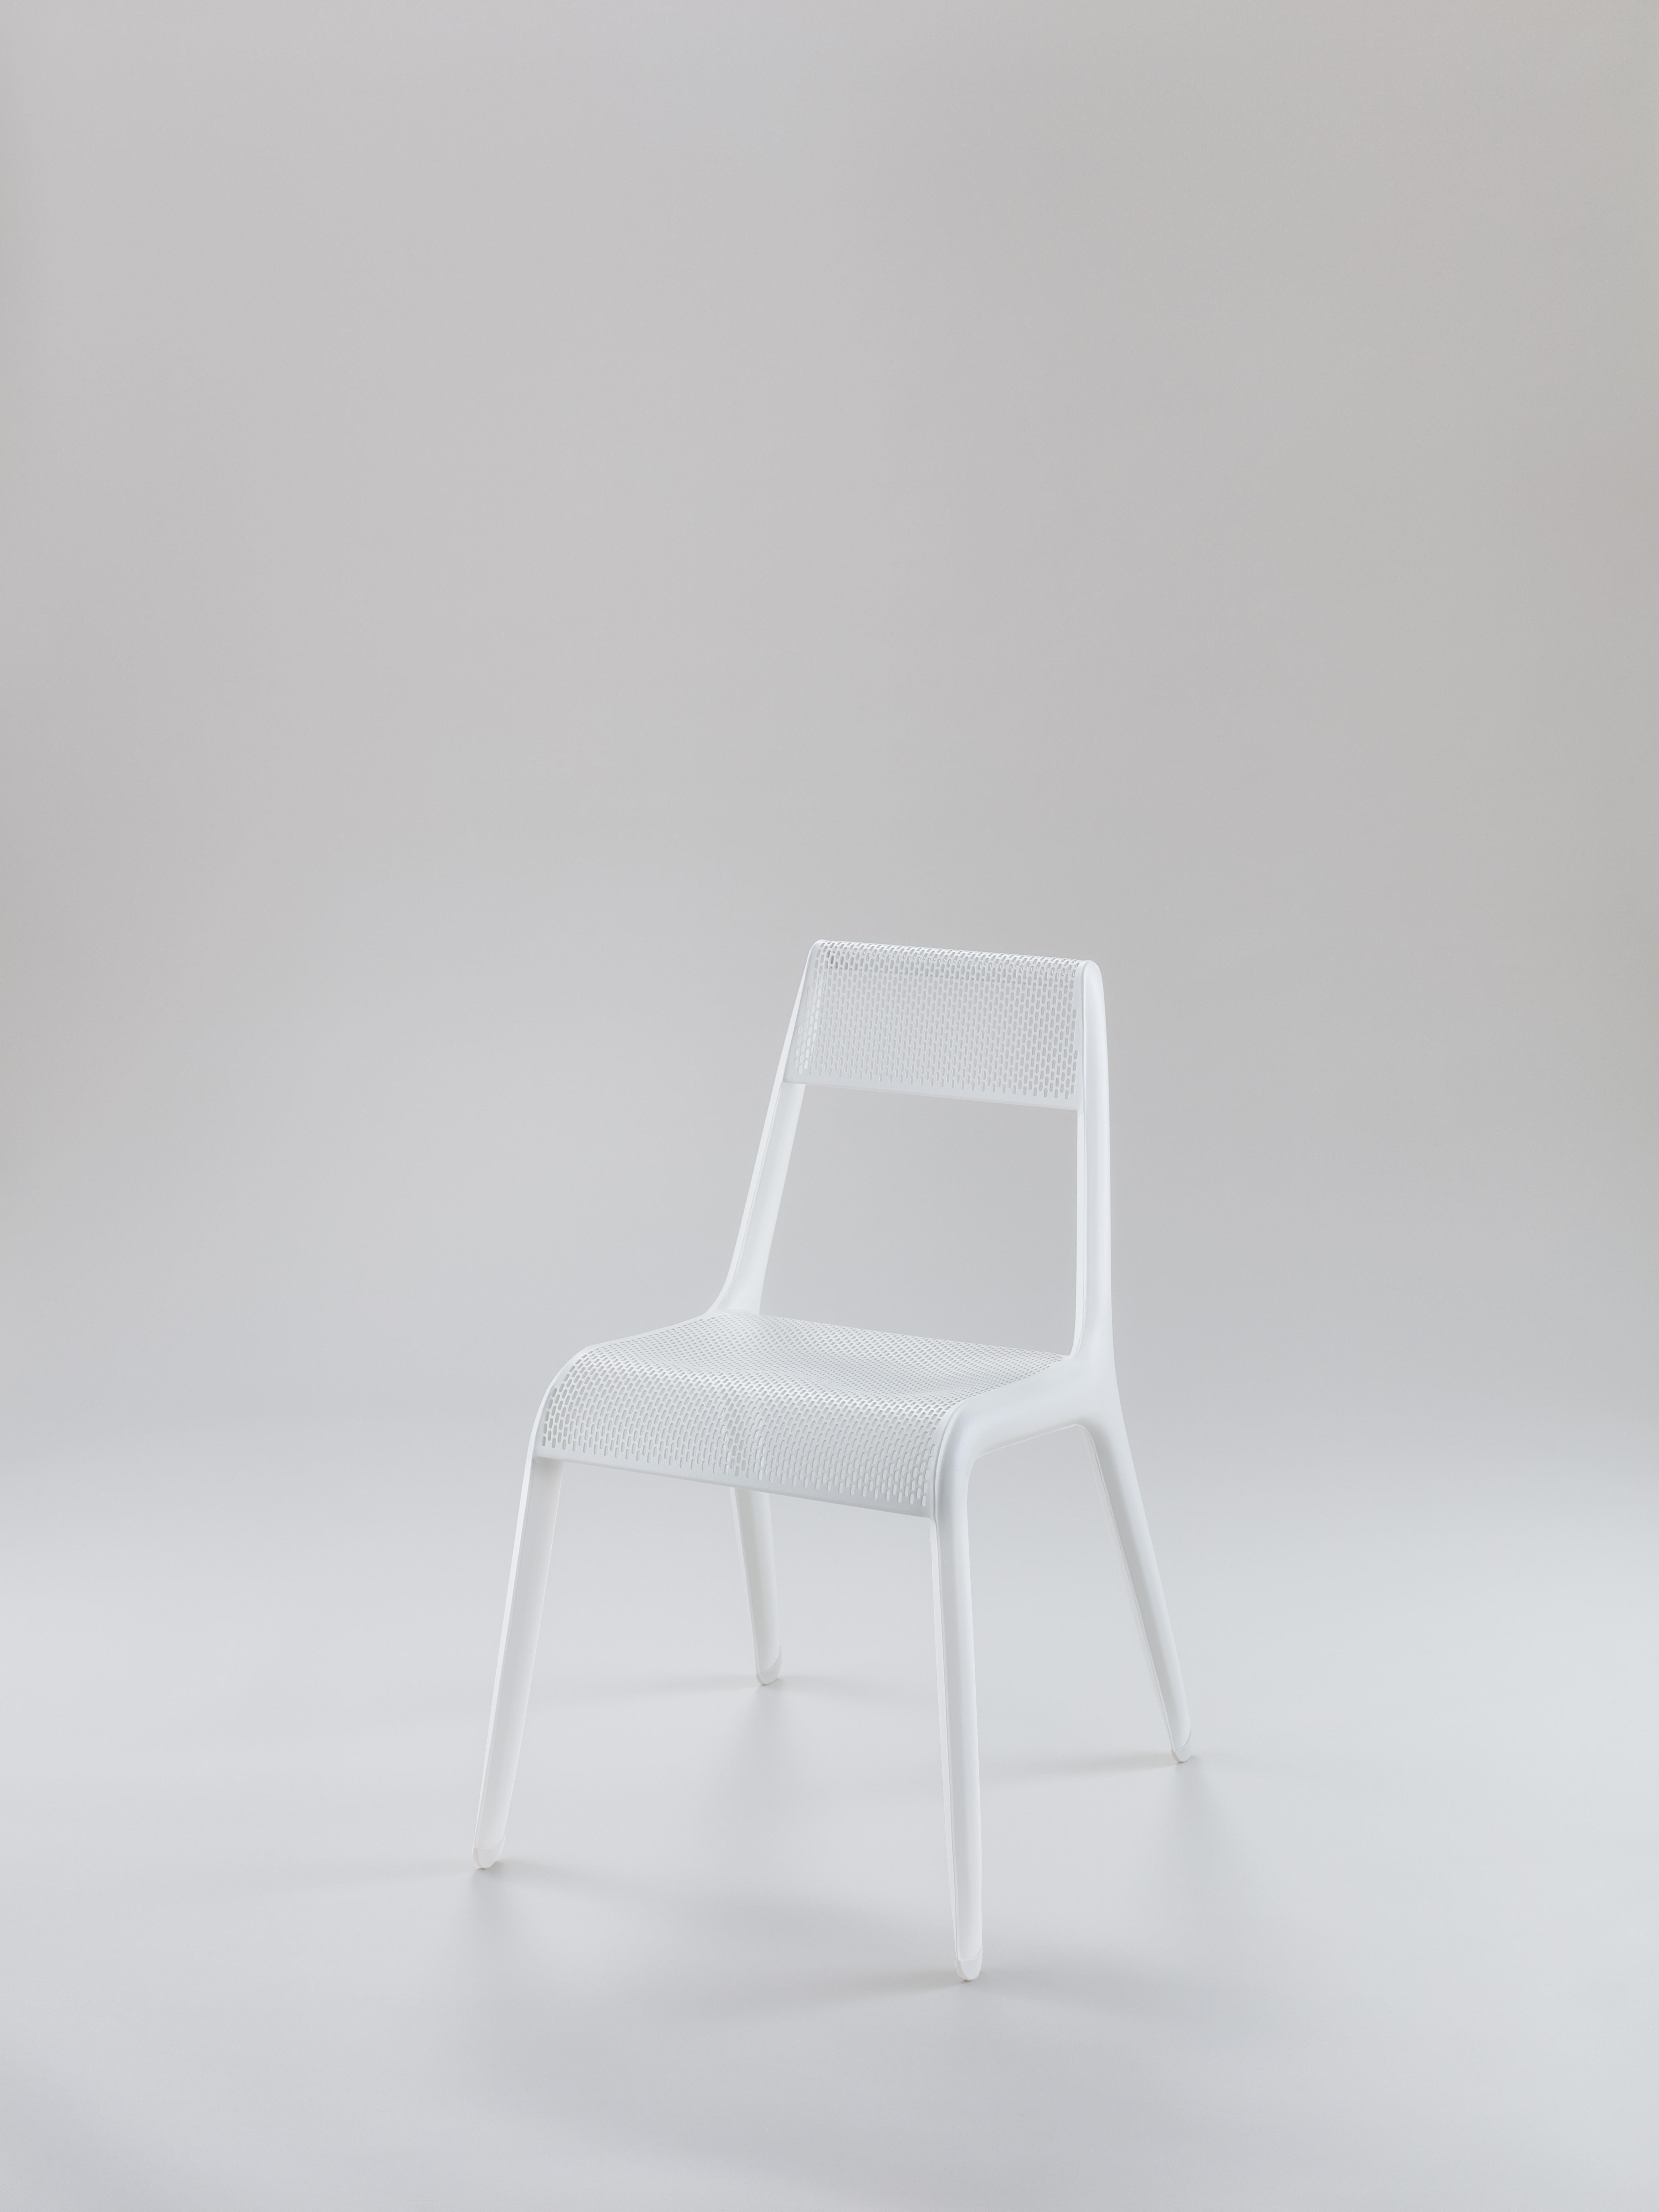 Fauteuil Ultraleggera blanc mat de Zieta
Dimensions : P 58 x L 49 x H 78 cm 
MATERIAL : Aluminium.
Finition : Revêtement en poudre.
Disponible dans d'autres couleurs. Disponible également en version Leggera. 


ULTRALEGGERA est une chaise